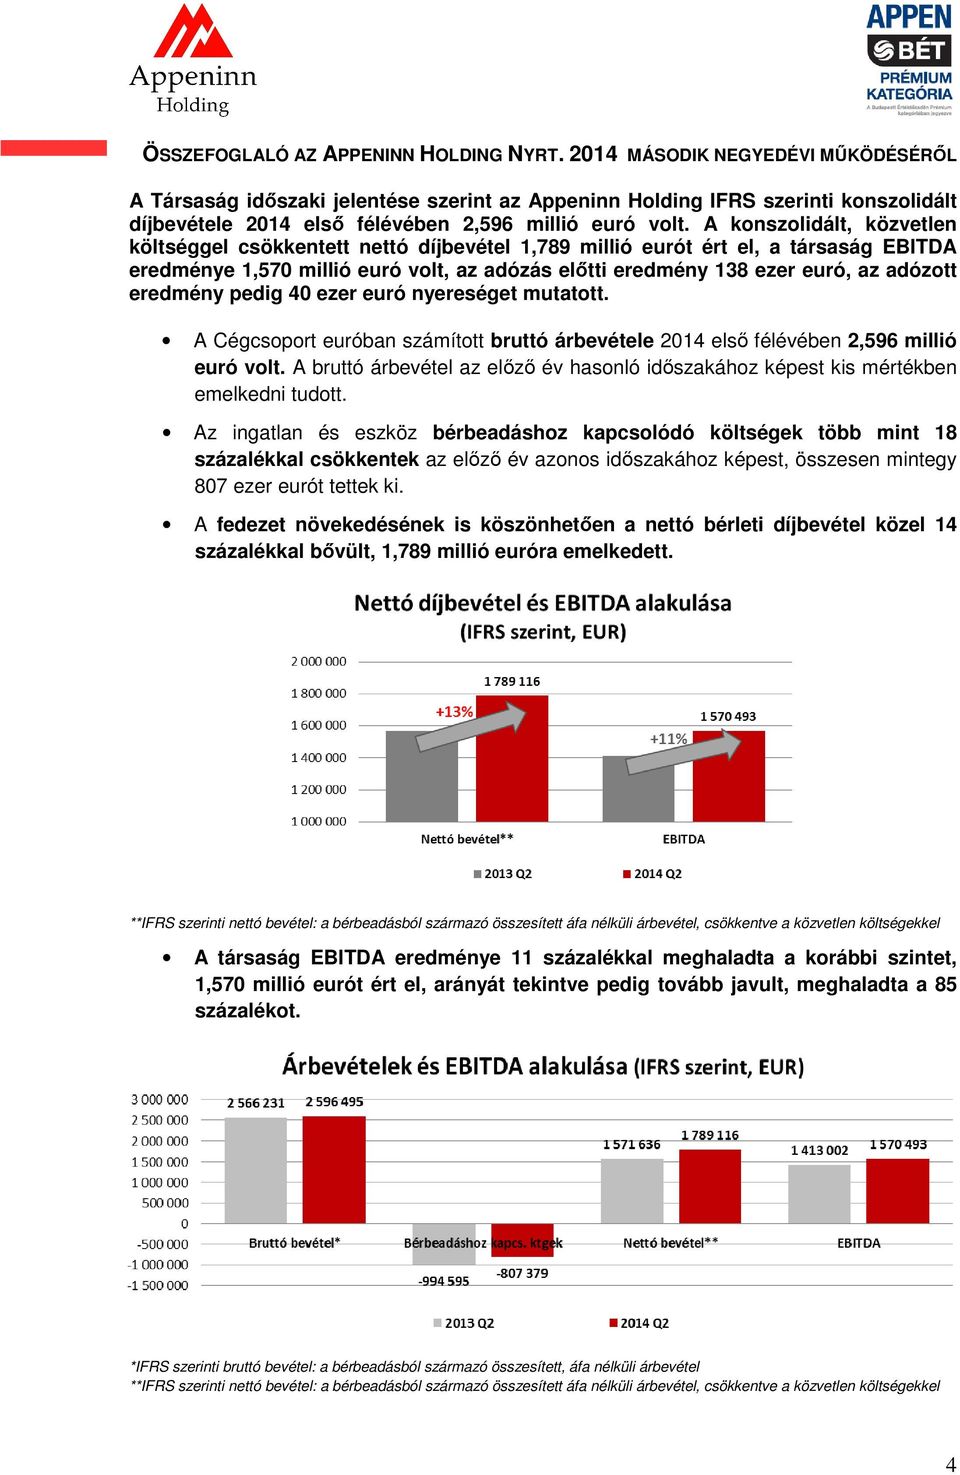 A konszolidált, közvetlen költséggel csökkentett nettó díjbevétel 1,789 millió eurót ért el, a társaság EBITDA eredménye 1,570 millió euró volt, az adózás előtti eredmény 138 ezer euró, az adózott